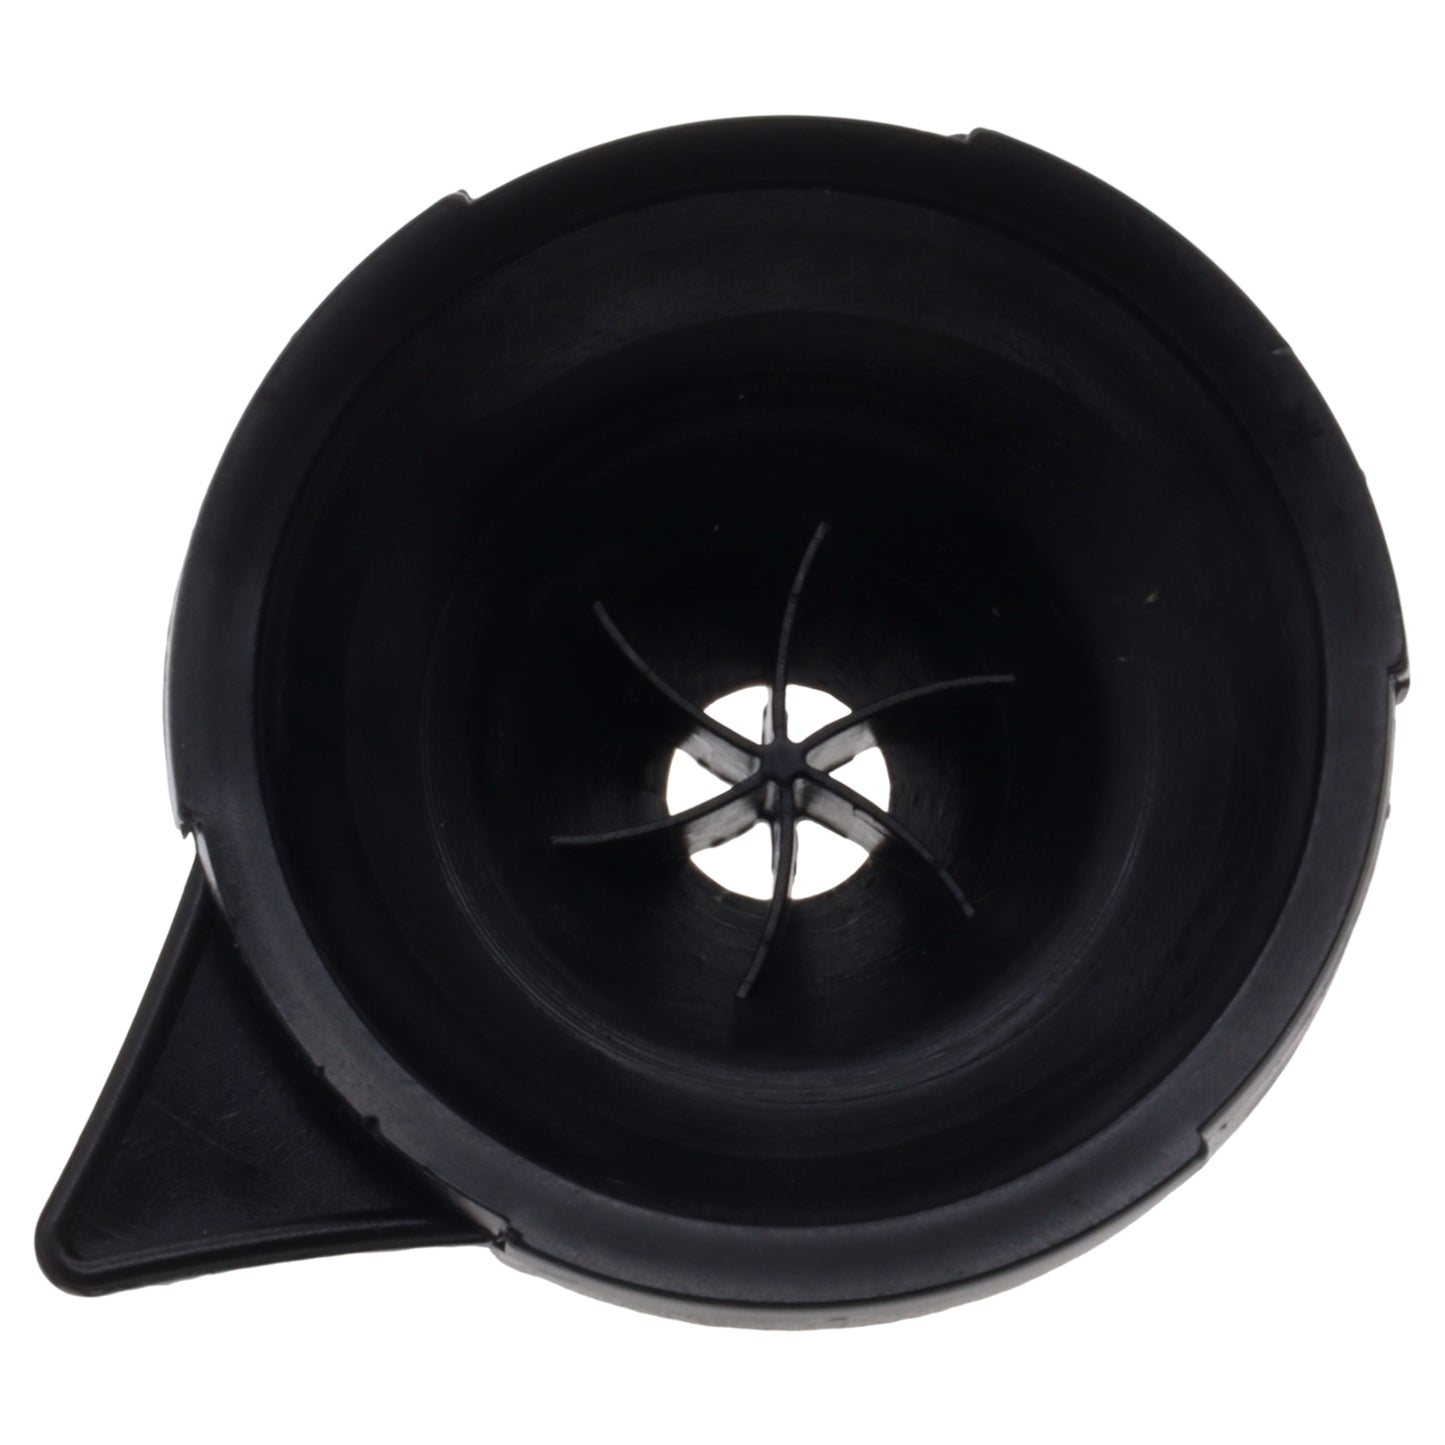 Aroma disco anello supporto porta filtro cialde macchina caffè Egò